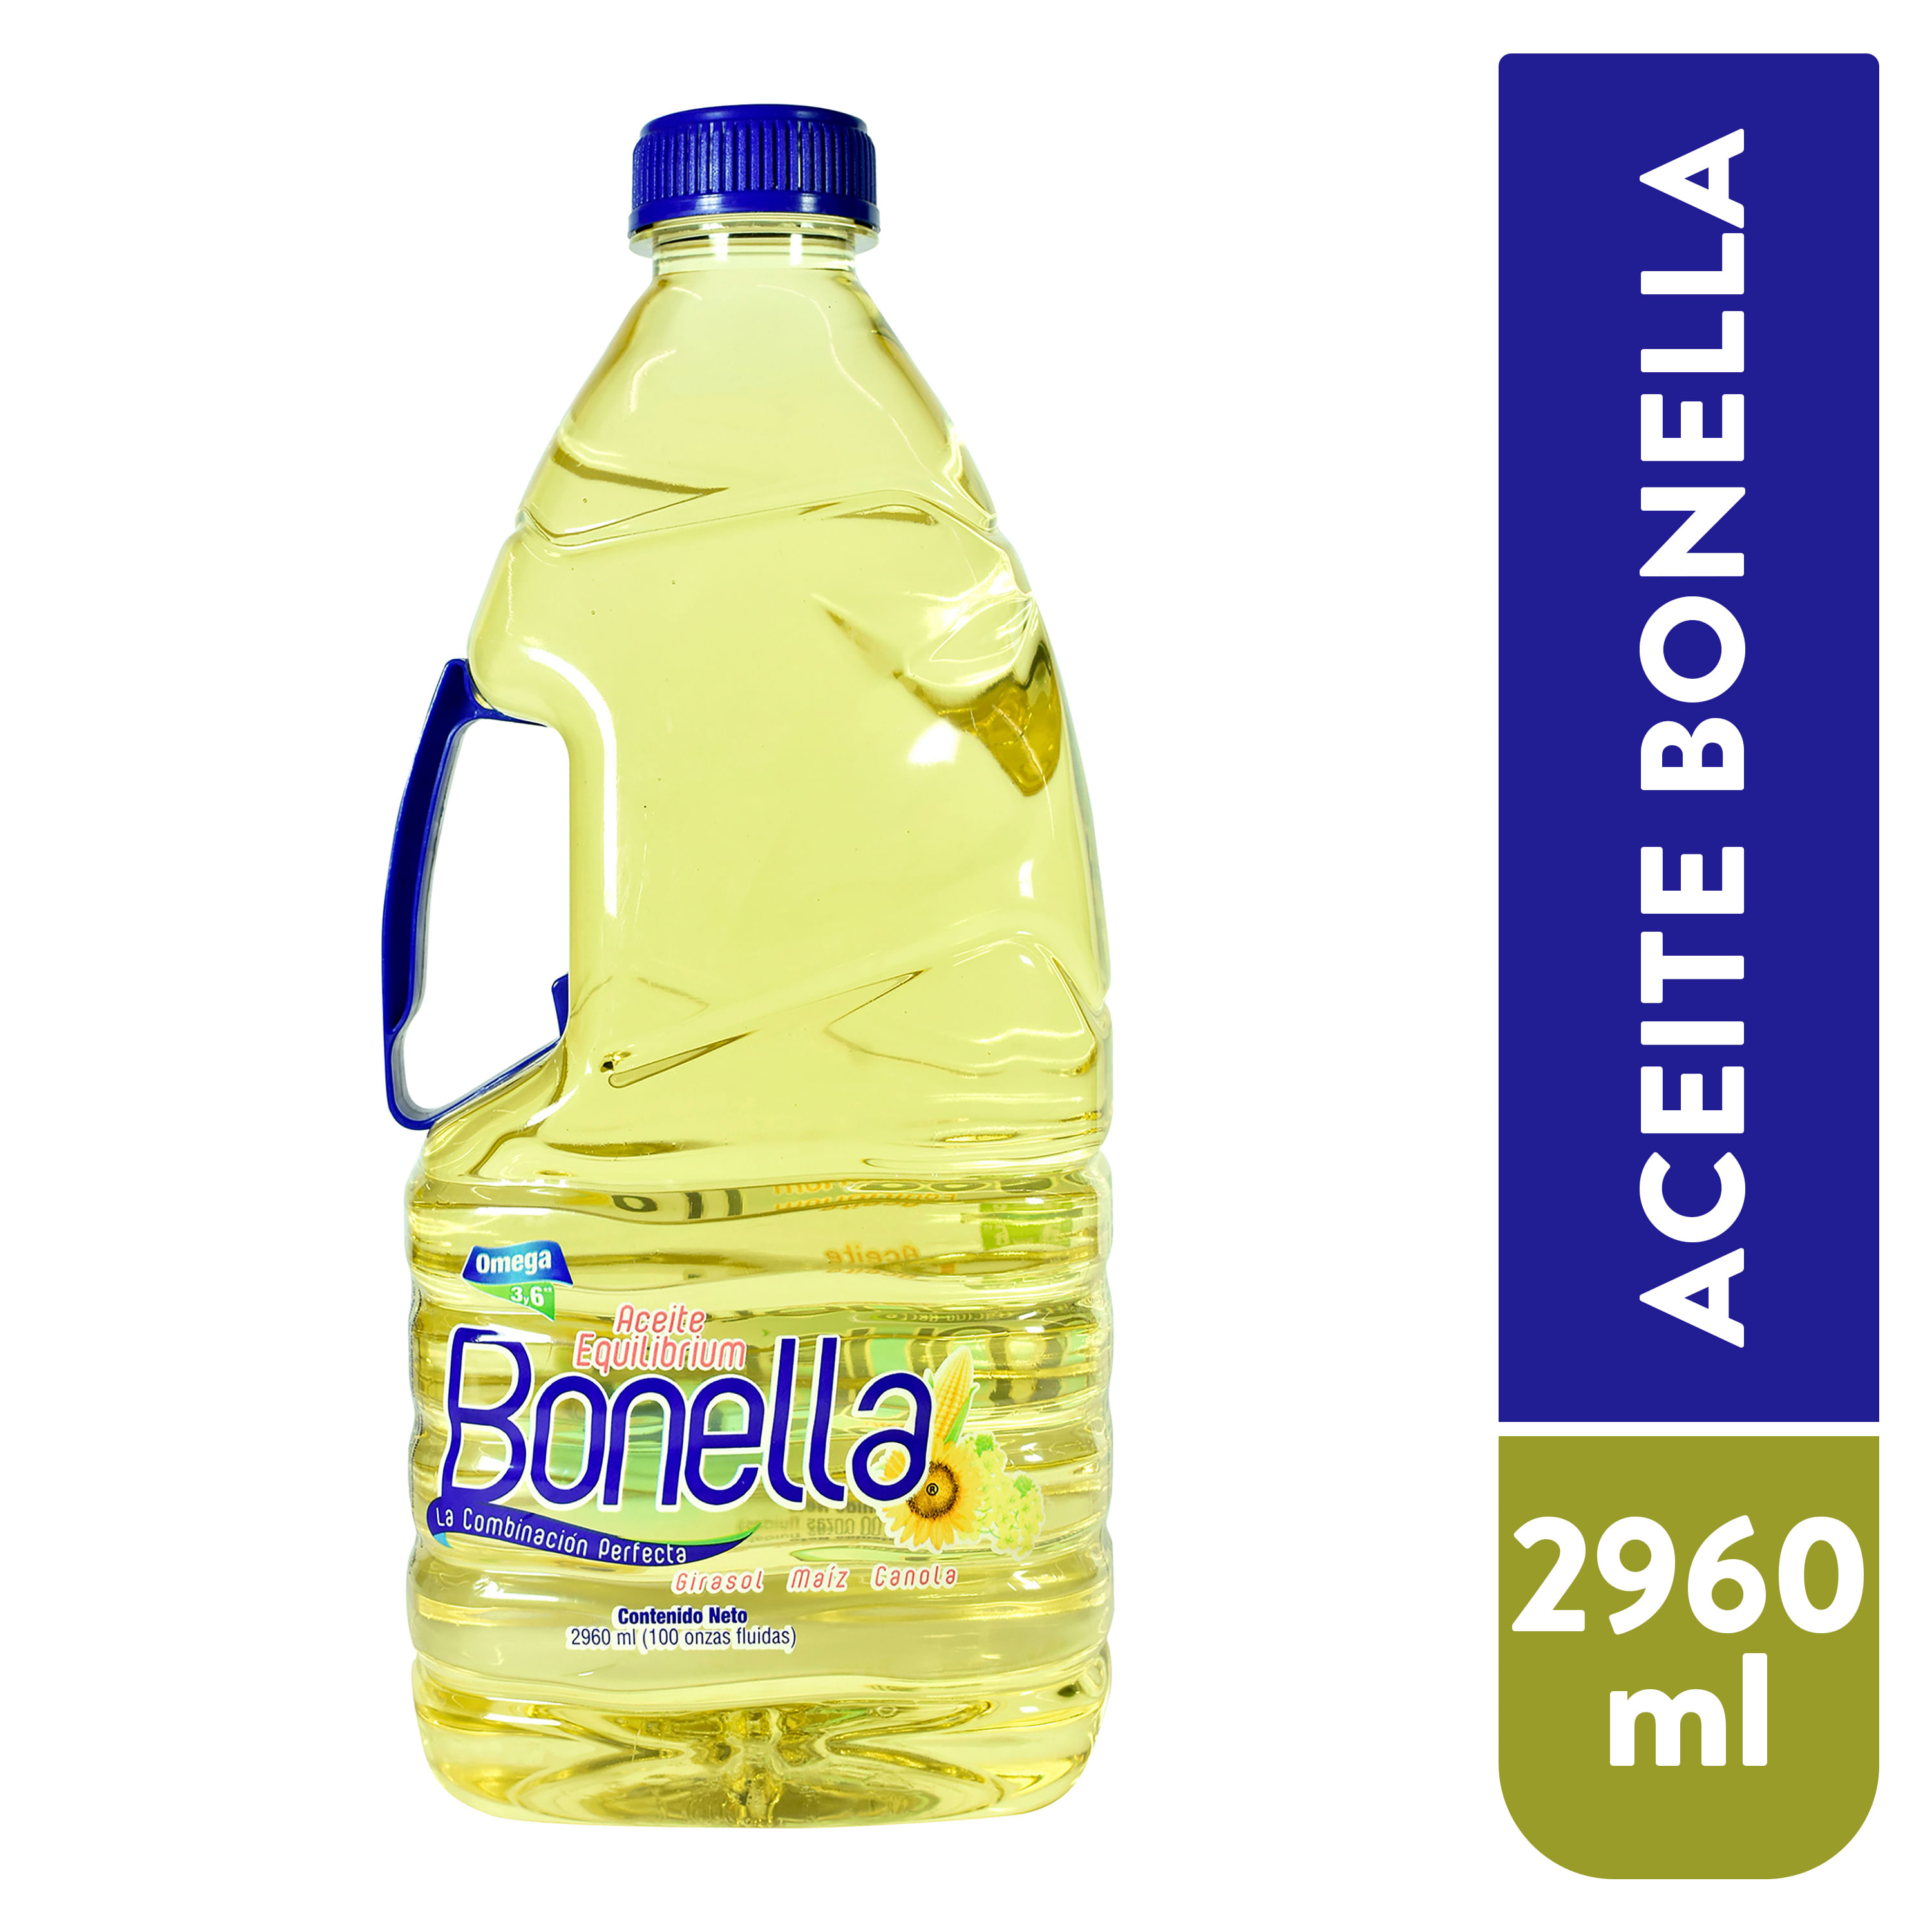 Aceite-Bonella-Girasol-Maiz-Canol-2960ml-1-3436